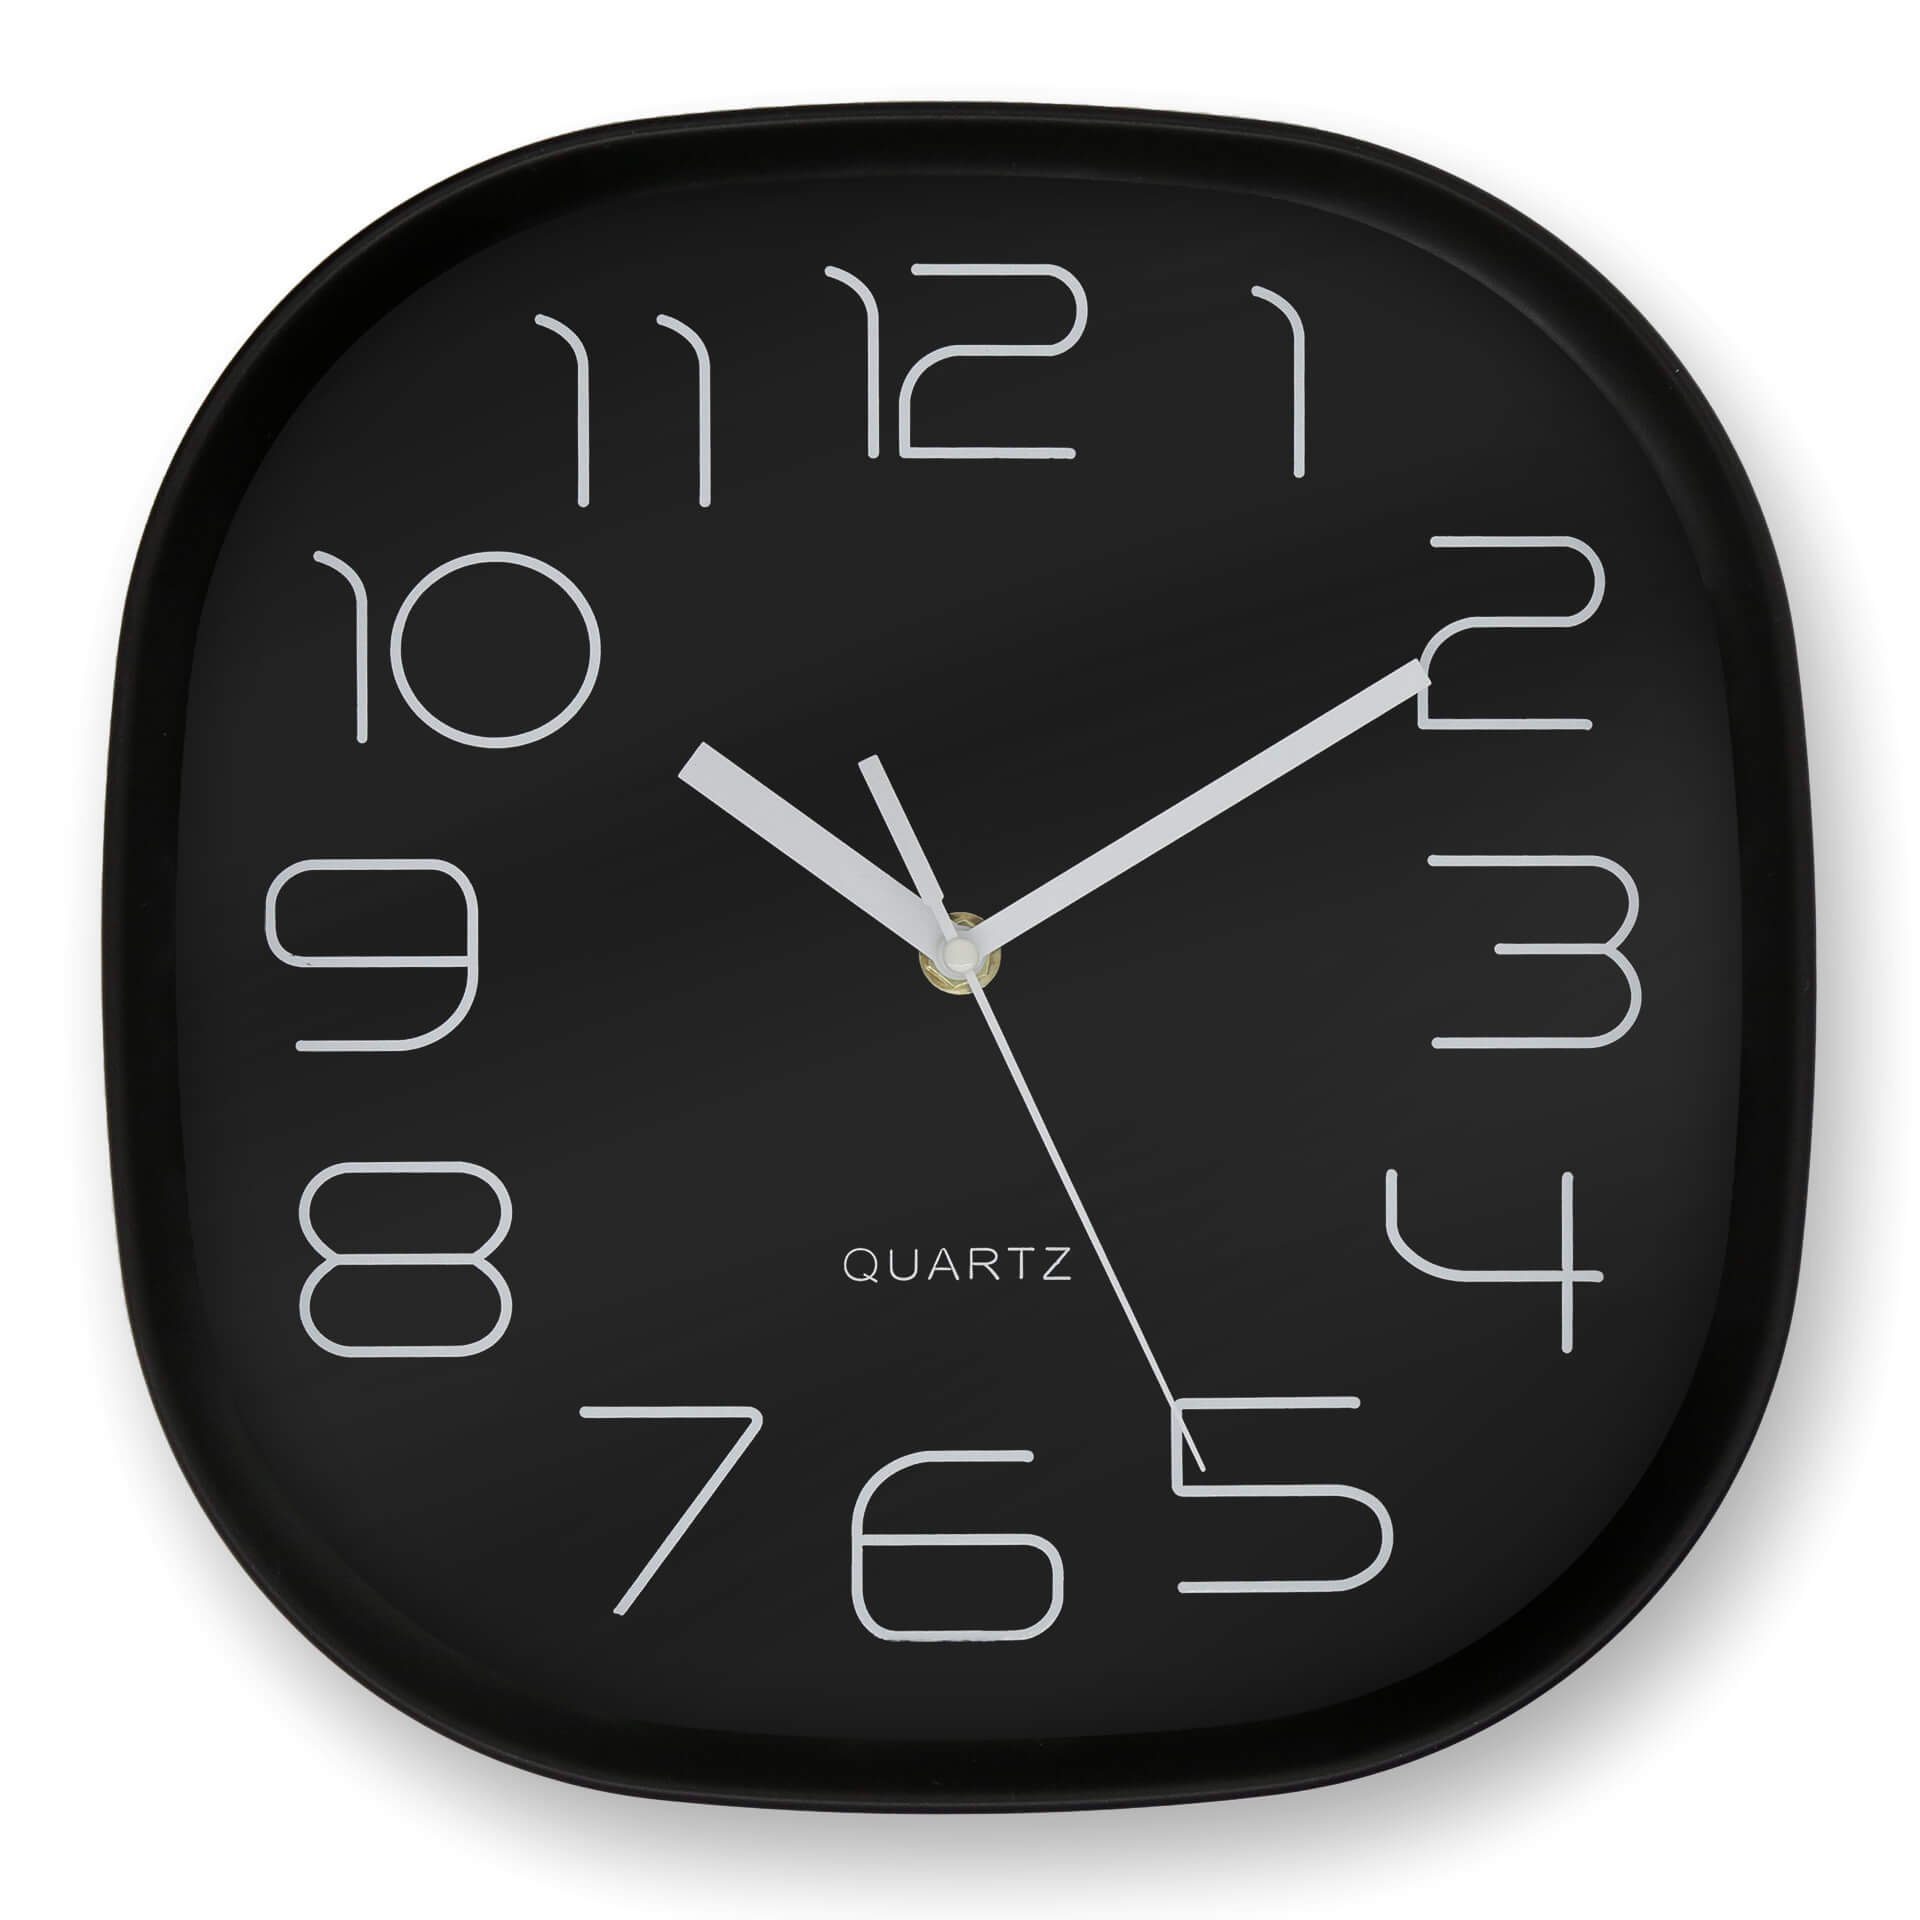 K&L Wall Art Wanduhr 28cm große Retro Wanduhr schwarz ohne Tickgeräusche Analoge Büro Uhr lautlos (hochwertiges Quarz Uhrwerk)